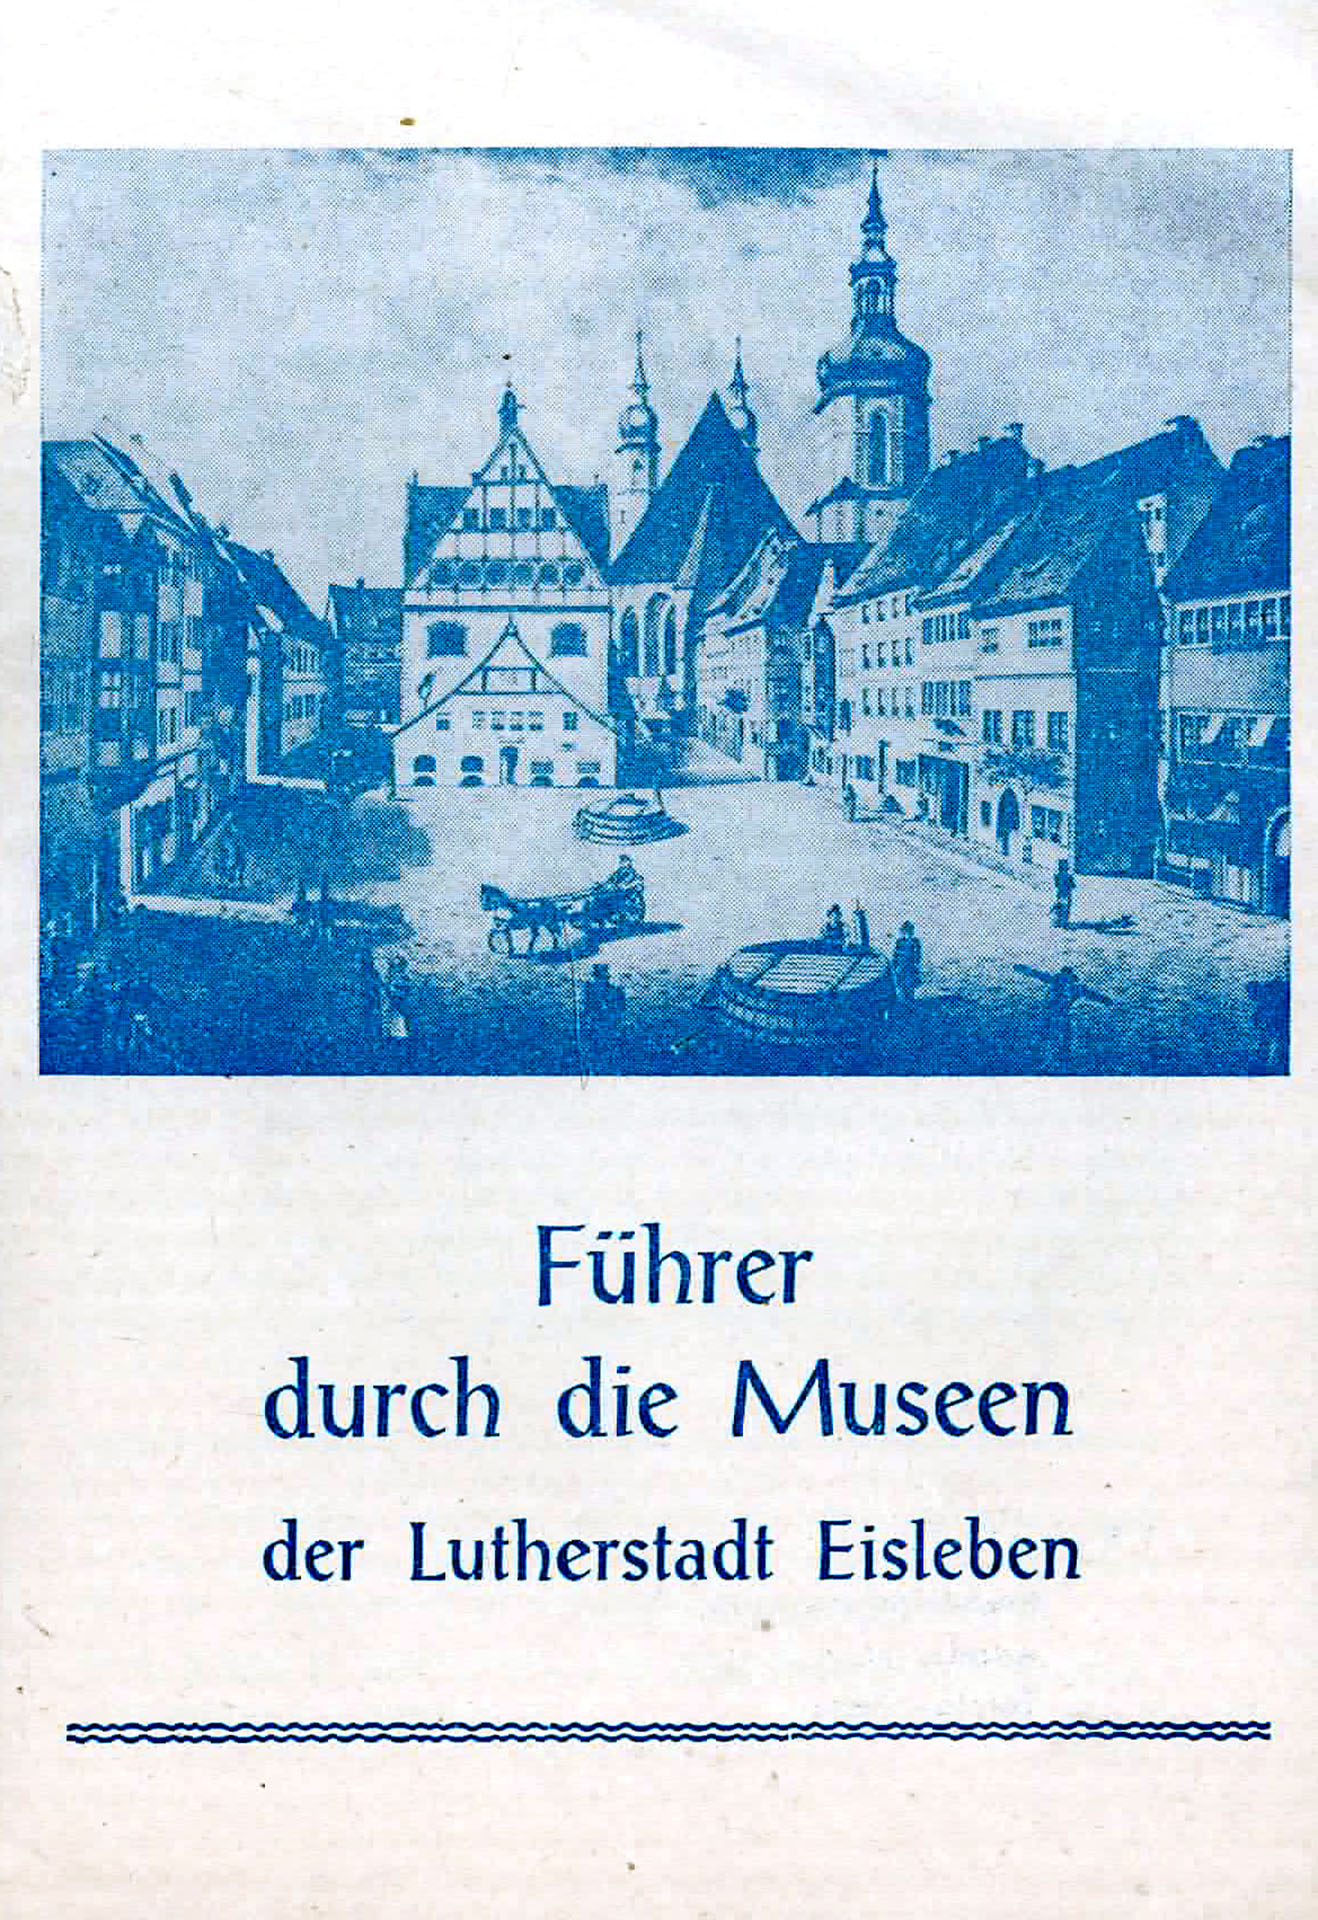 Führer durch die Museen der Lutherstadt Eisleben - Kreisheimatmuseeum